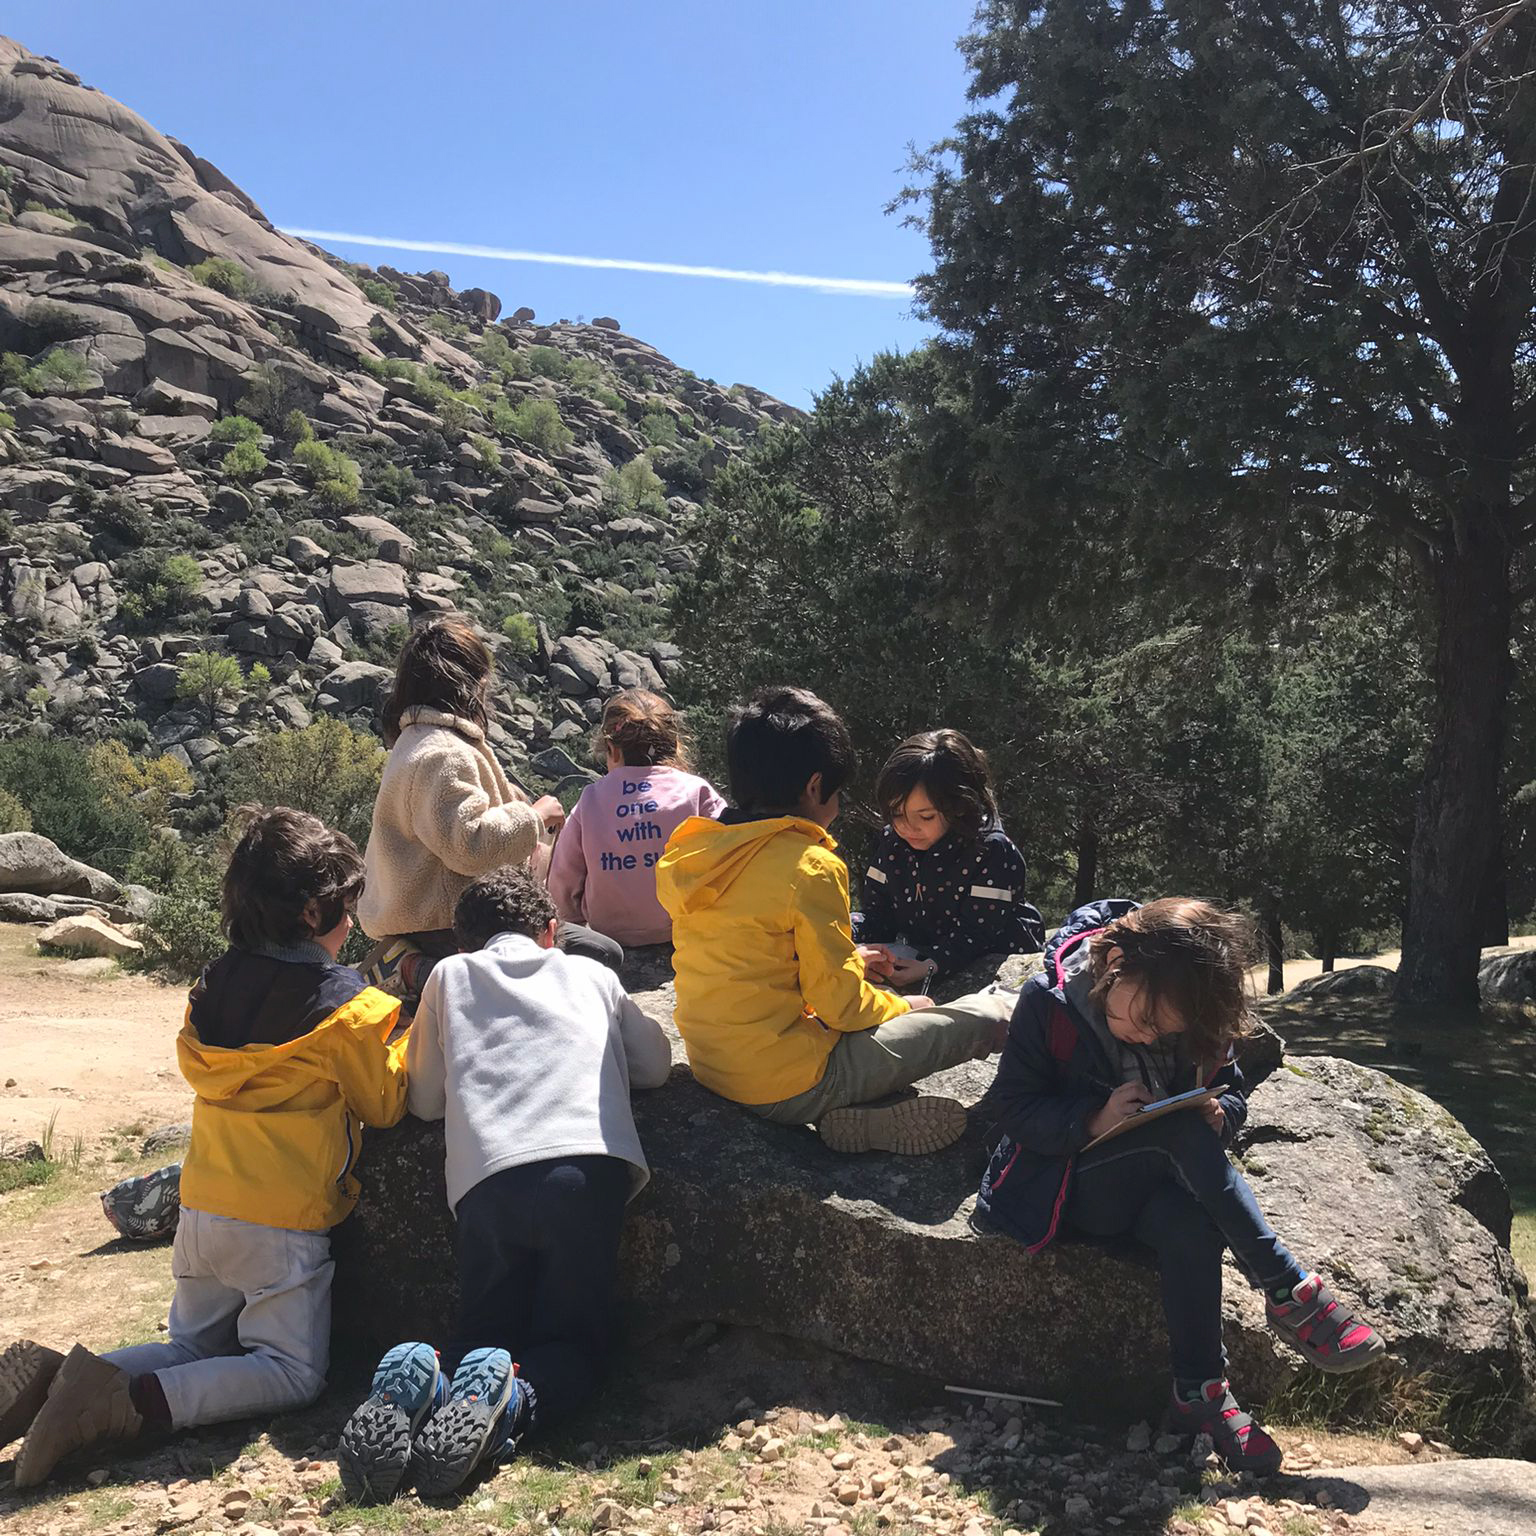 Naturaleza. Vista posterior de un grupo de 7 menores sentados en un suelo rocoso realizando una actividad común. 